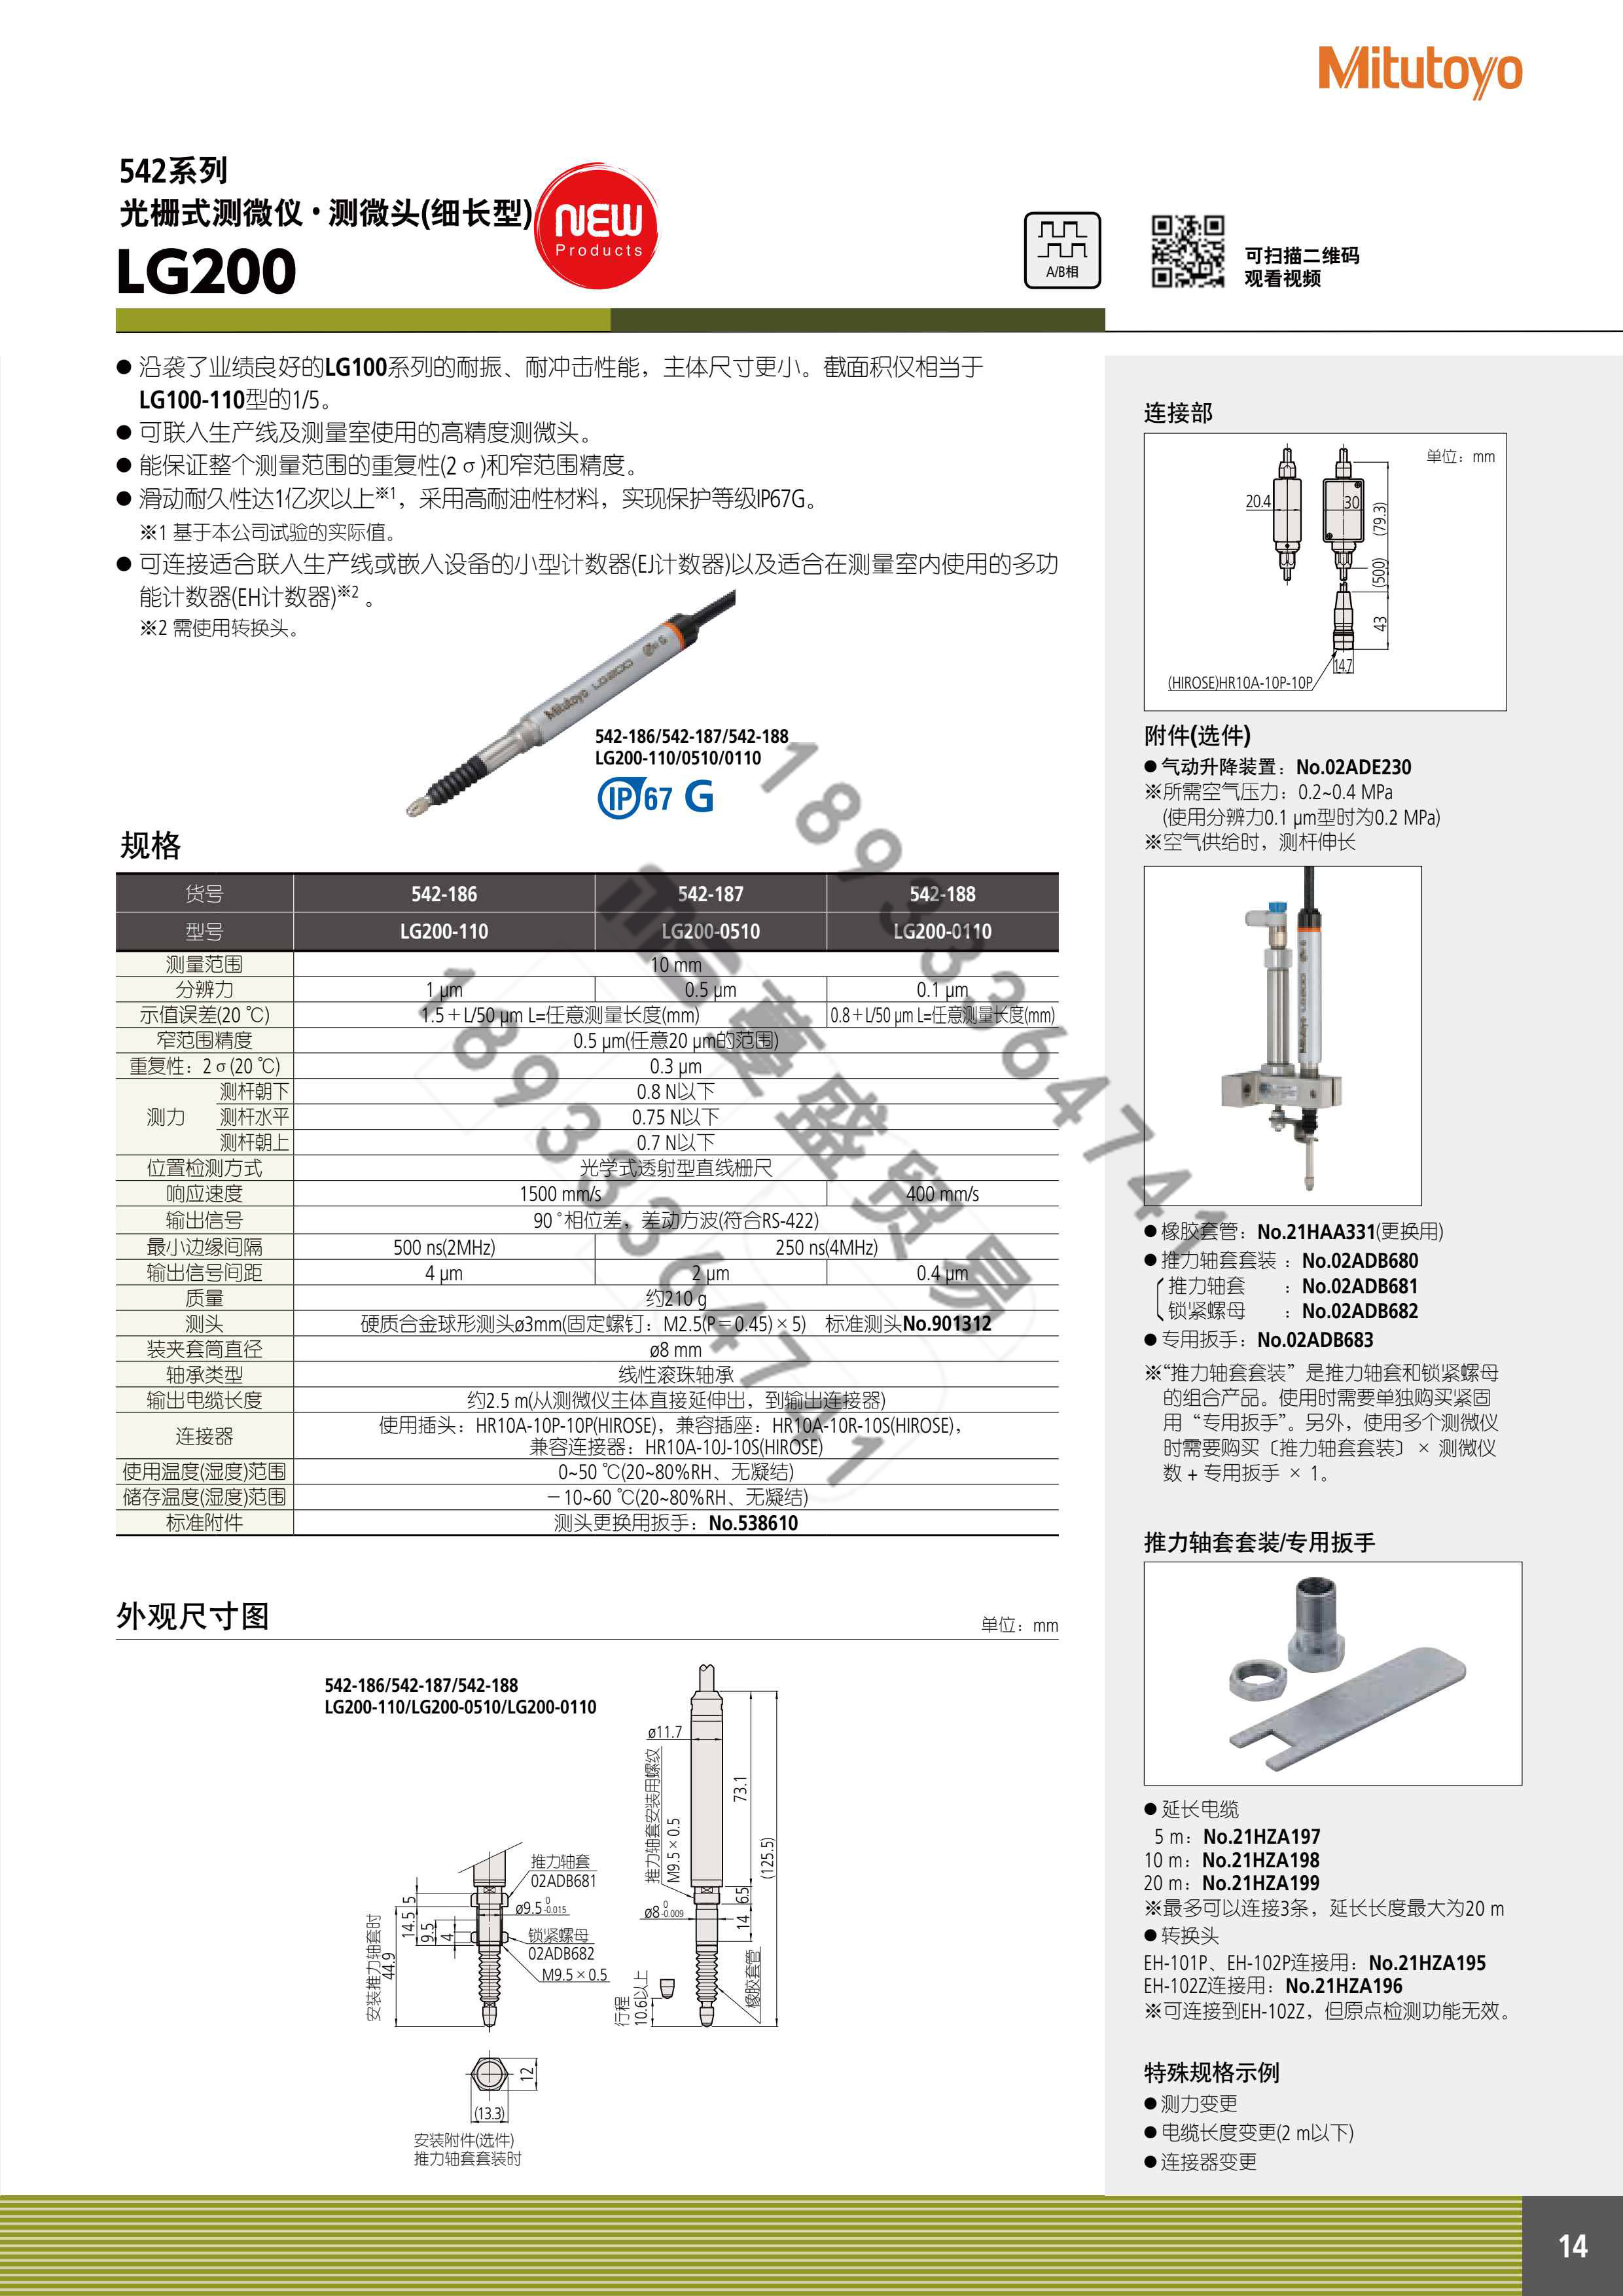 耐环境·细长型光栅式测微仪 LG200系列.jpg